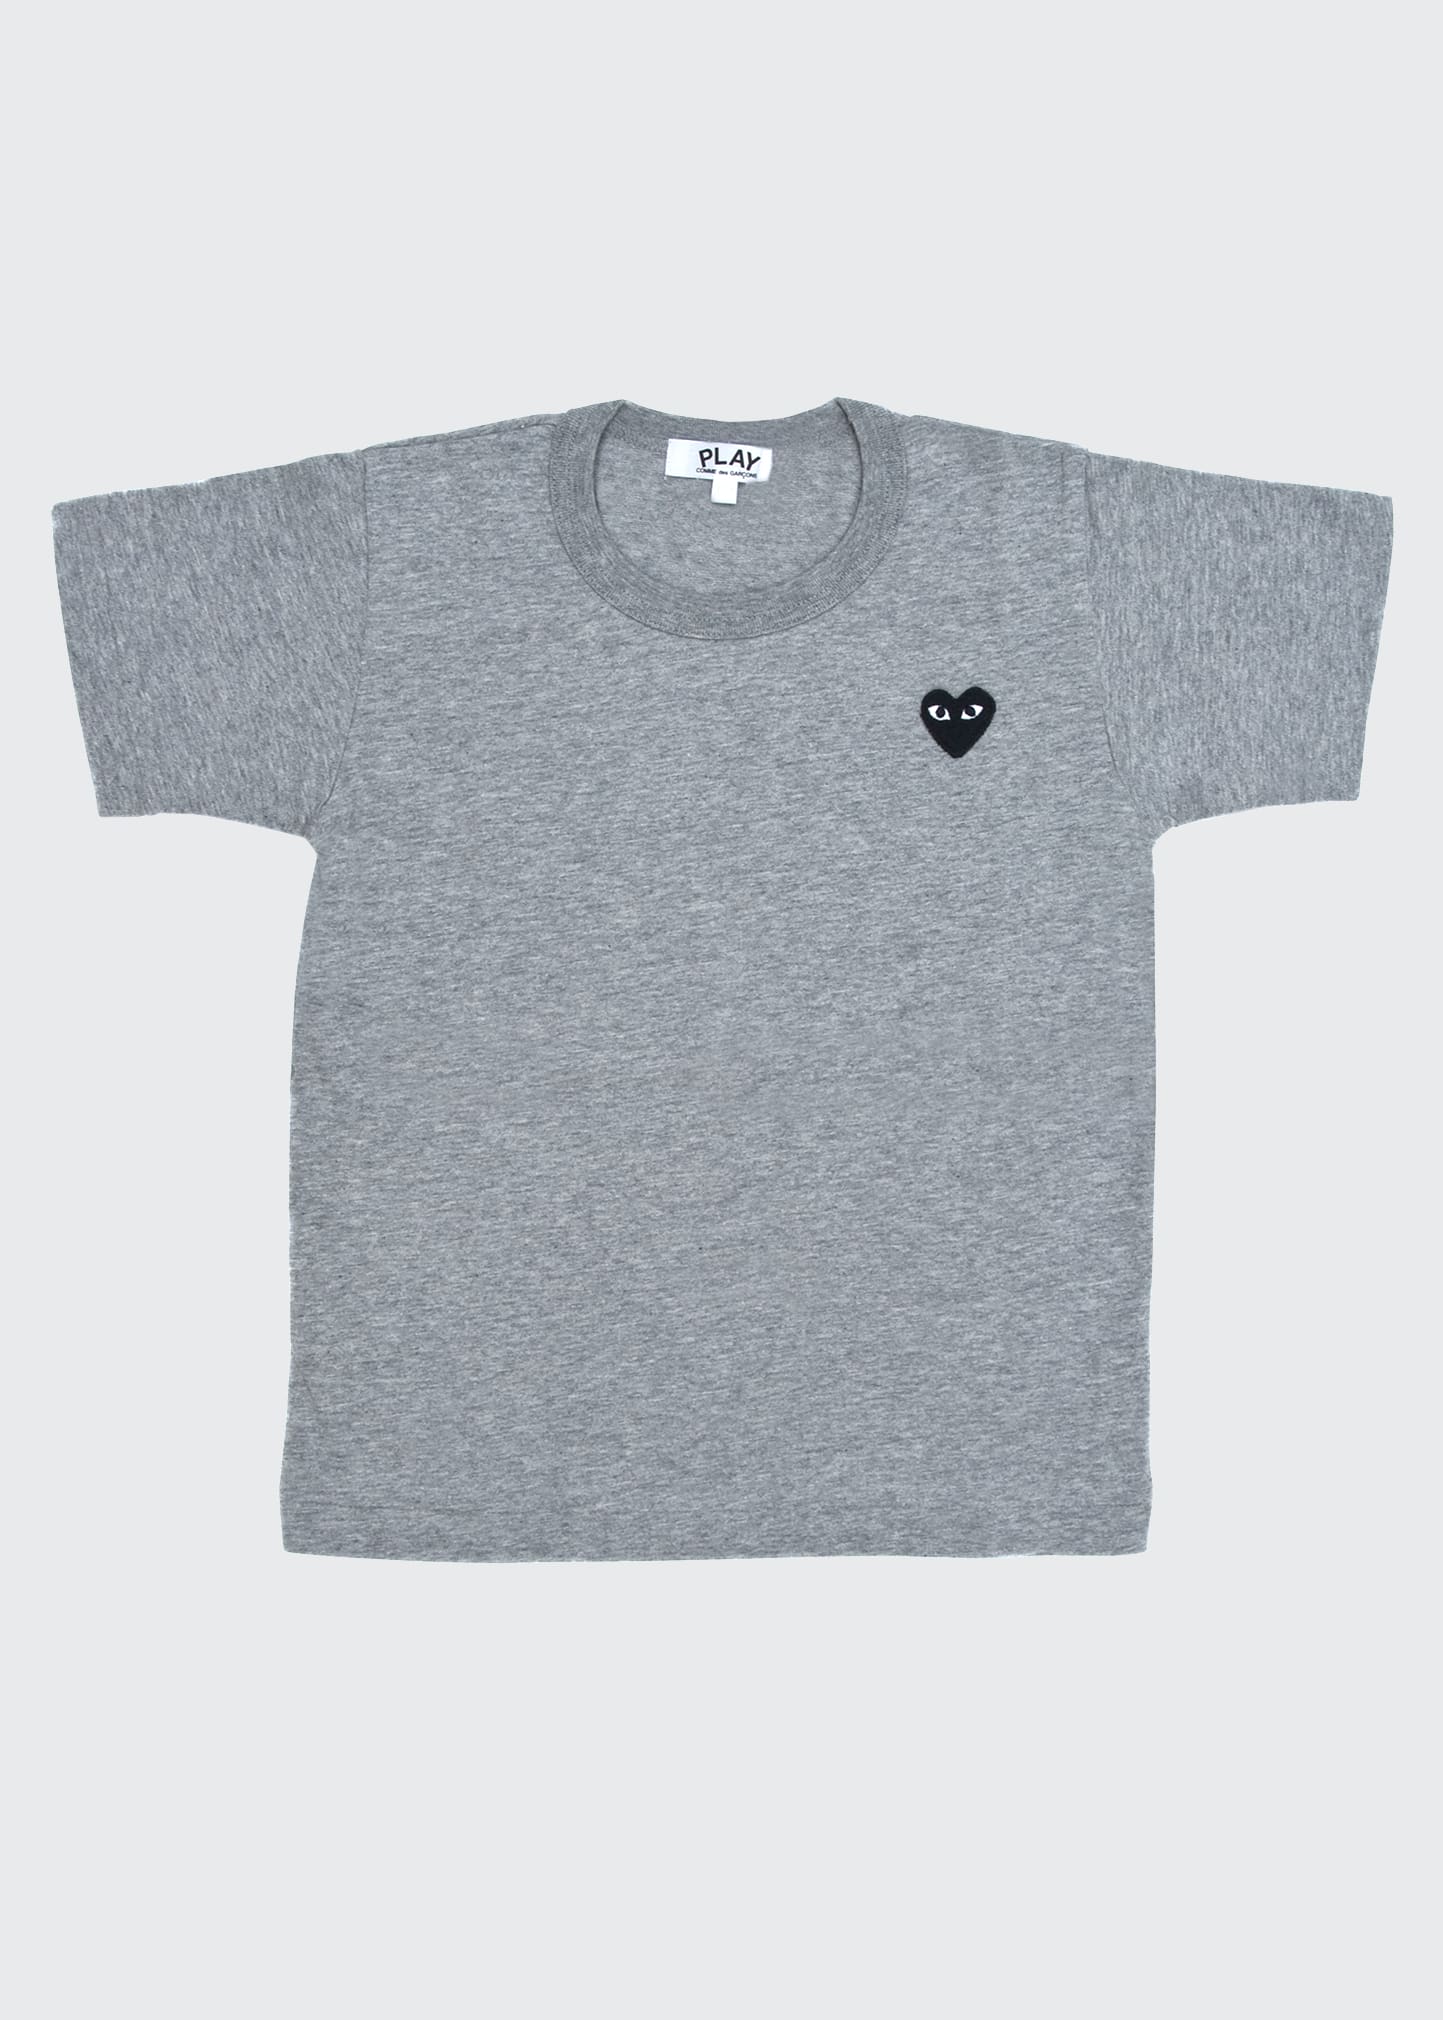 Comme Des Garçons Kid's Signature Heart Short-sleeve T-shirt In Gray